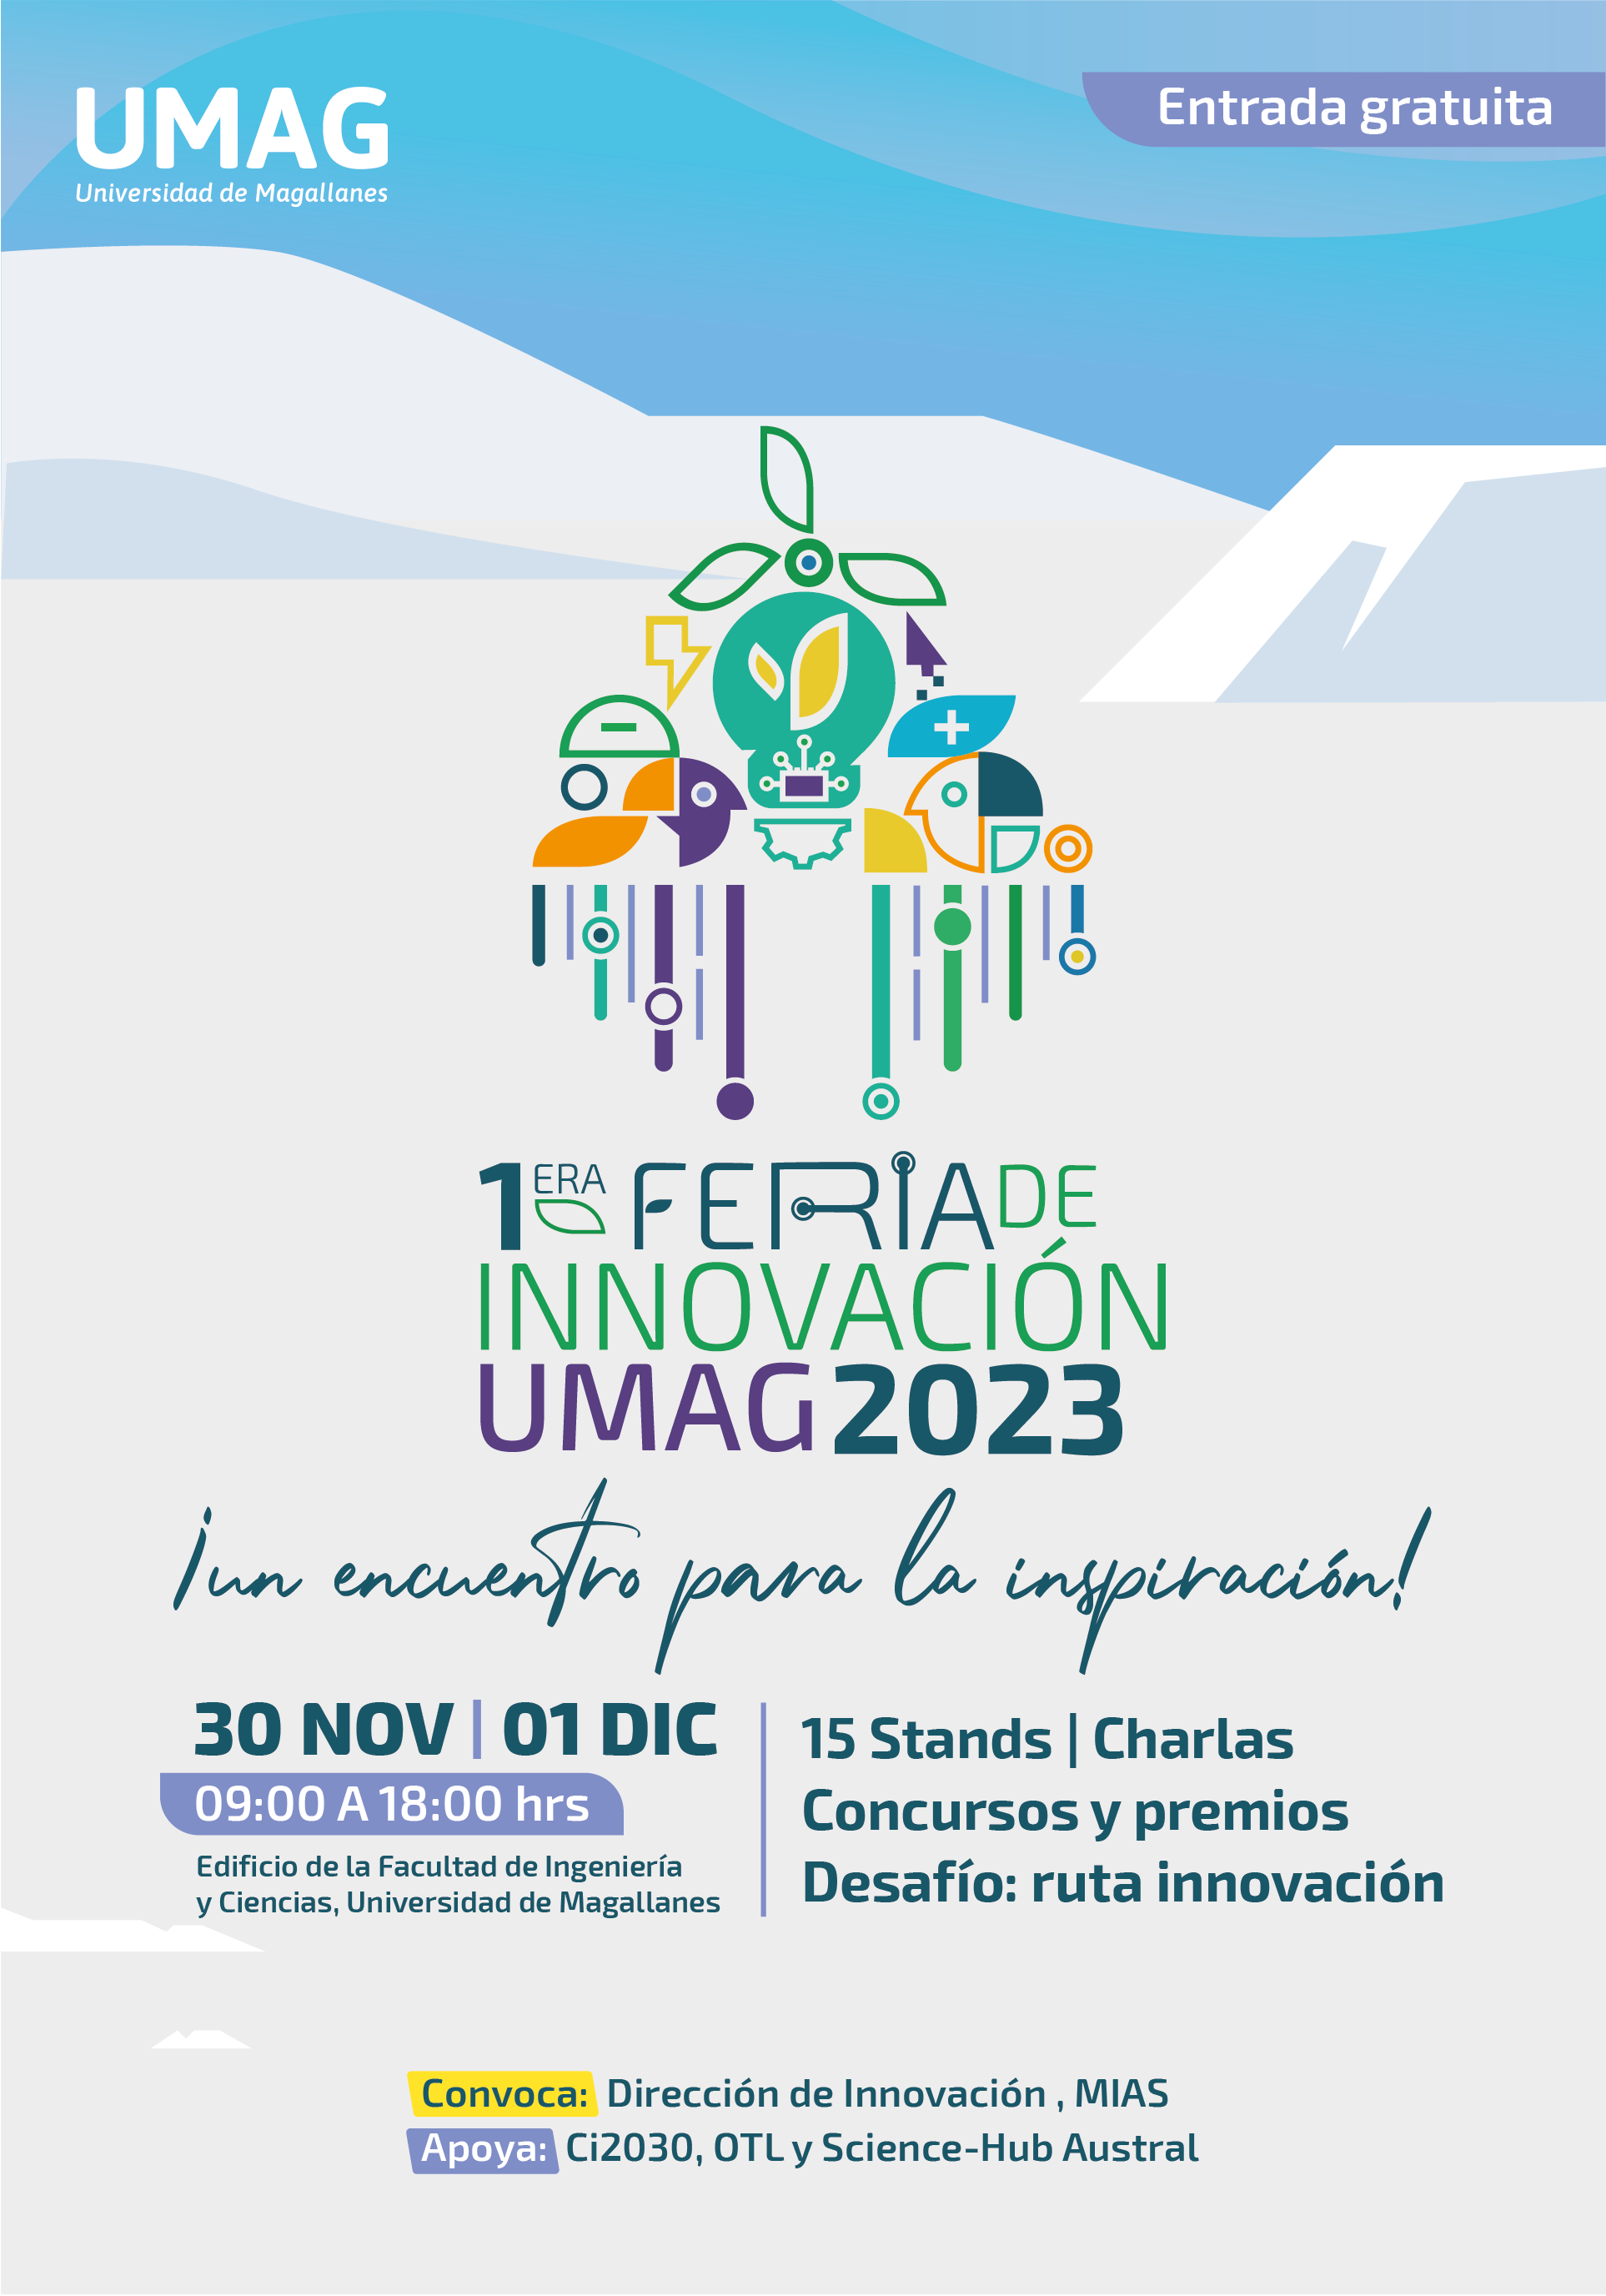 Feria de Innovación UMAG invita a conocer novedosas propuestas en educación, salud, tecnologías y economía circular